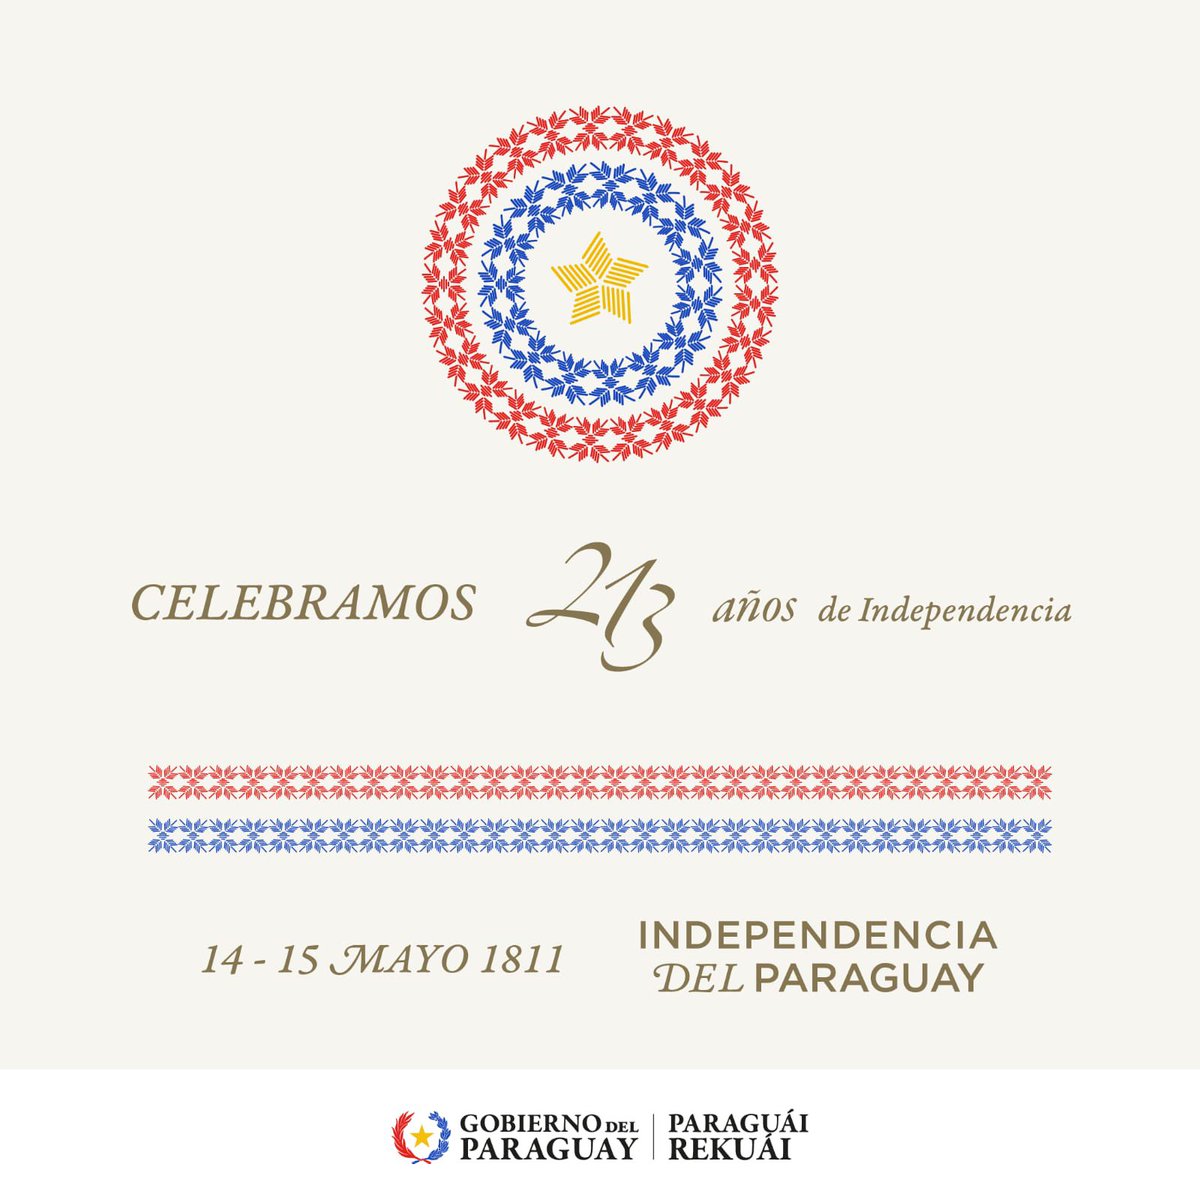 ¡Feliz 213 años de independencia, Paraguay! 🇵🇾✨ En este 14 y 15 de mayo celebramos con orgullo nuestra libertad y soberanía. Que sigamos construyendo un futuro lleno de paz, unidad y progreso. ¡Viva Paraguay!